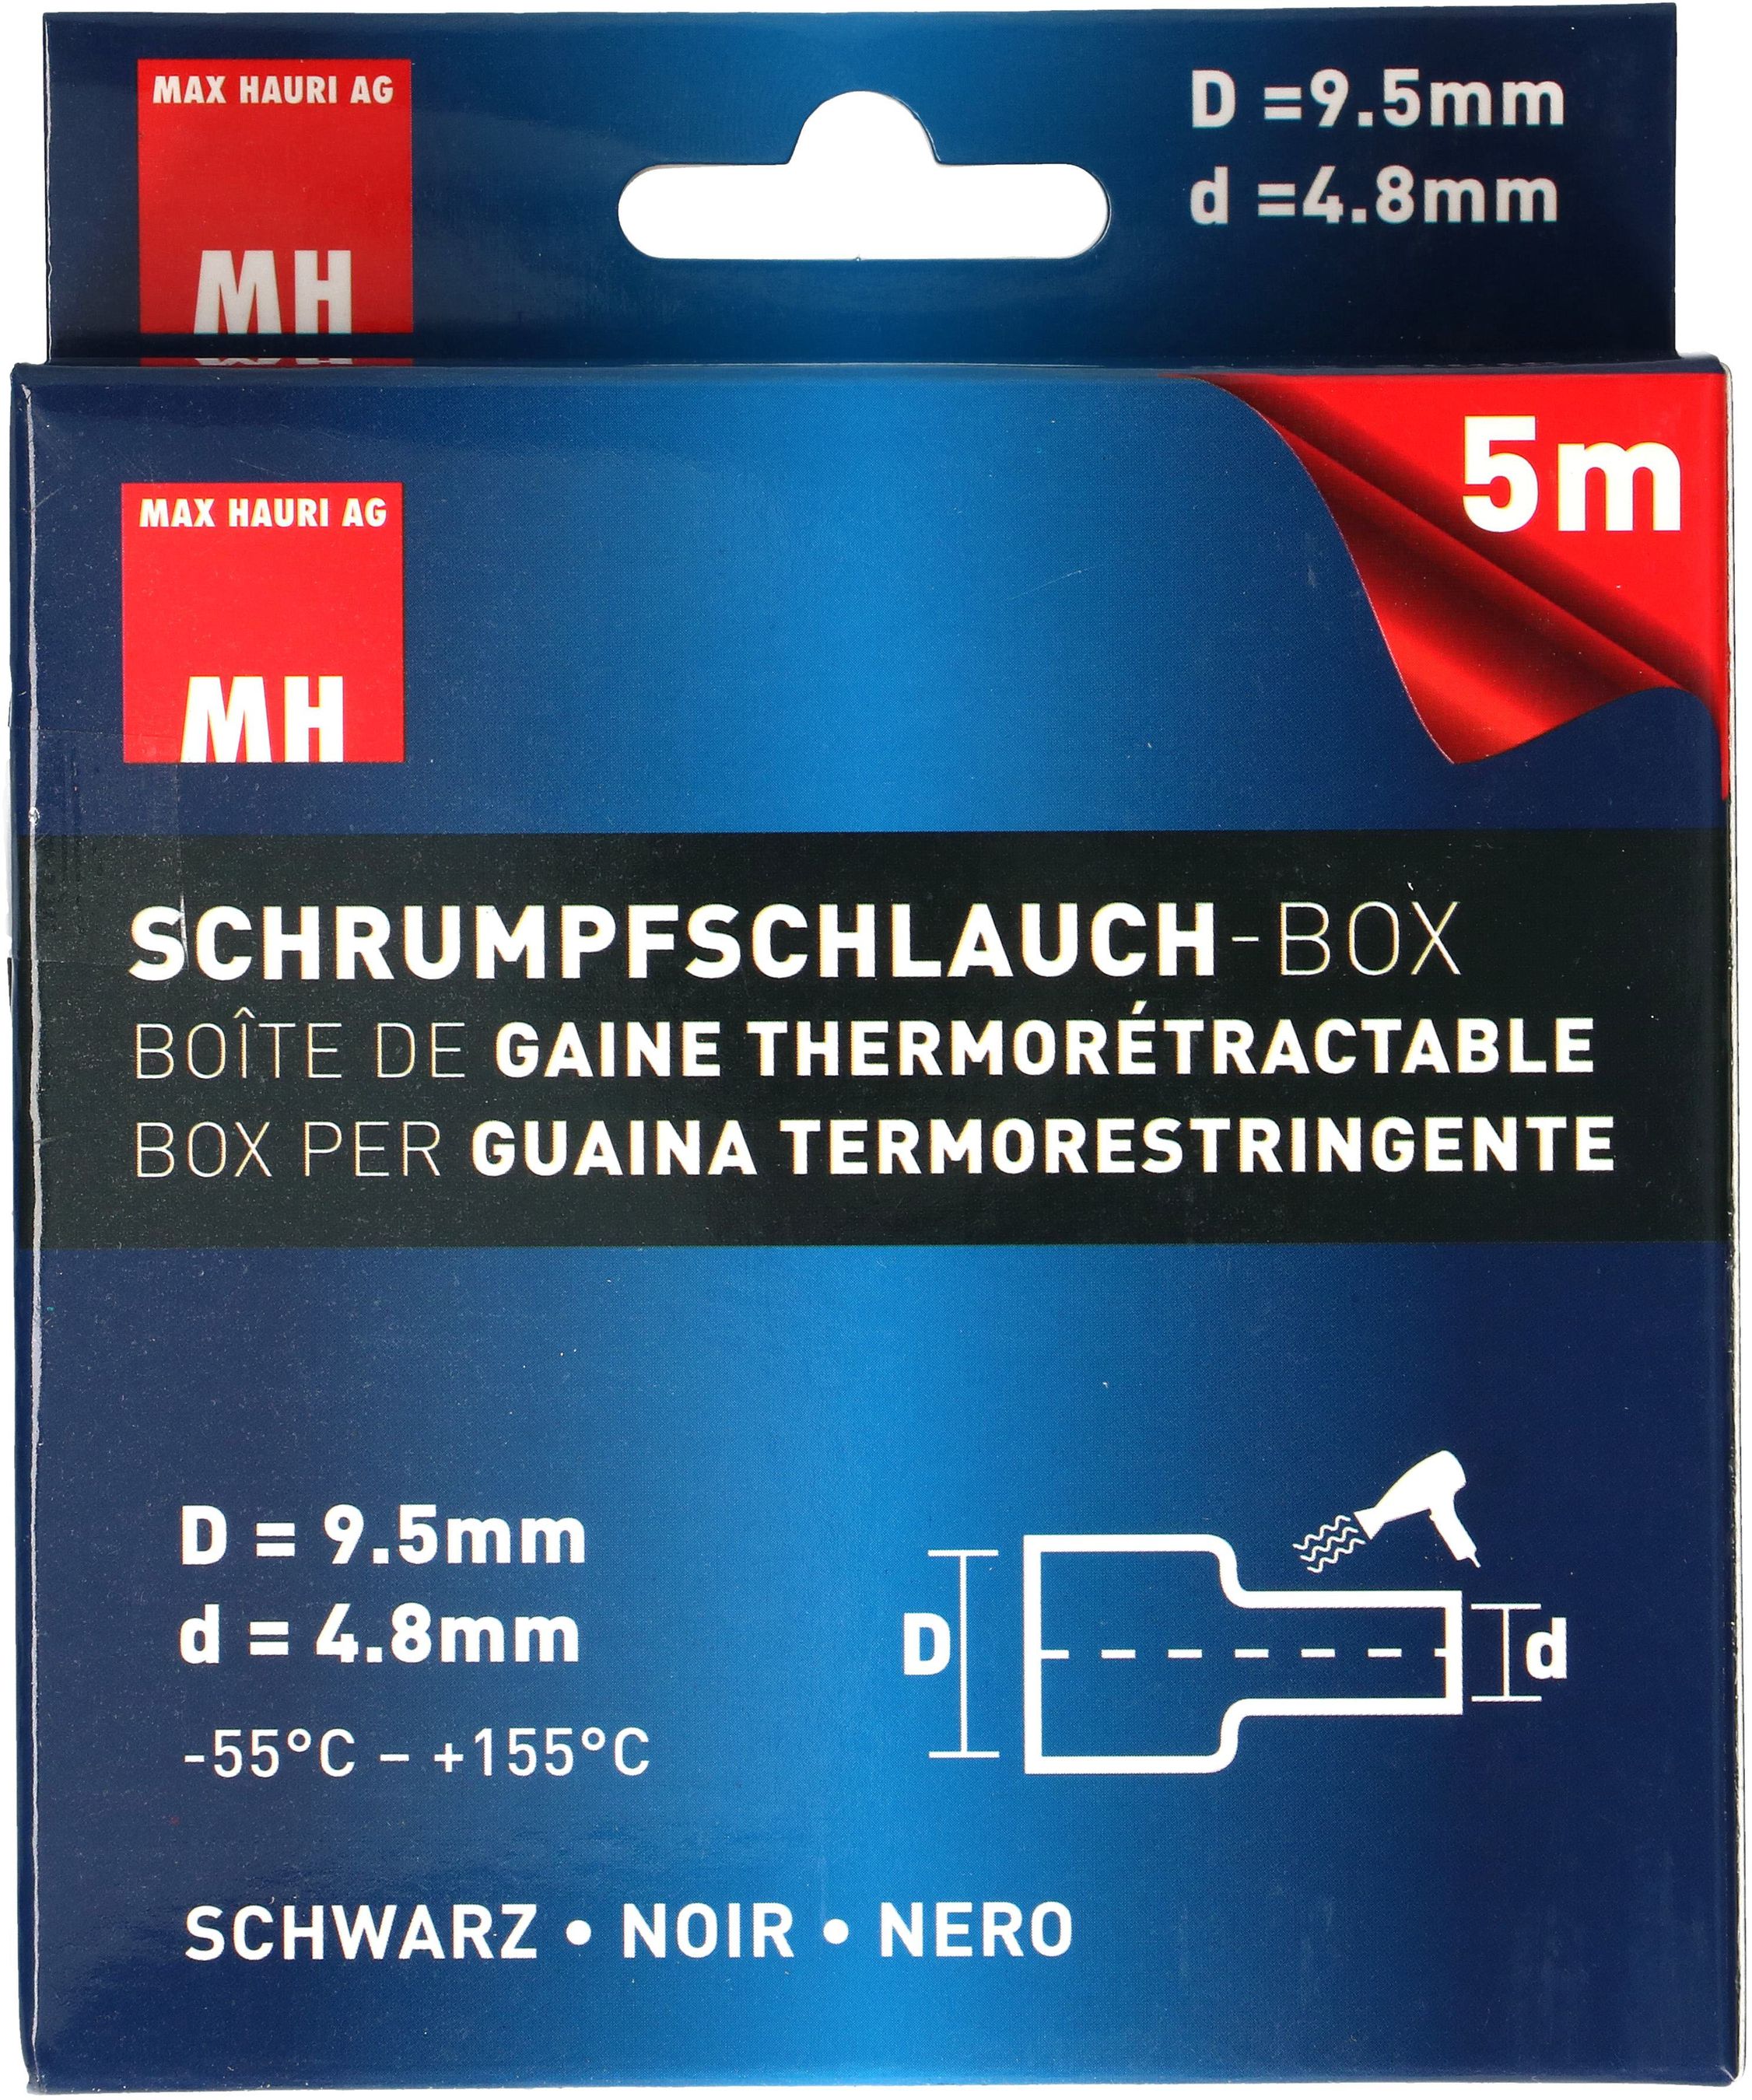 Schrumpfschlauch-Box 9.5-4.8mm